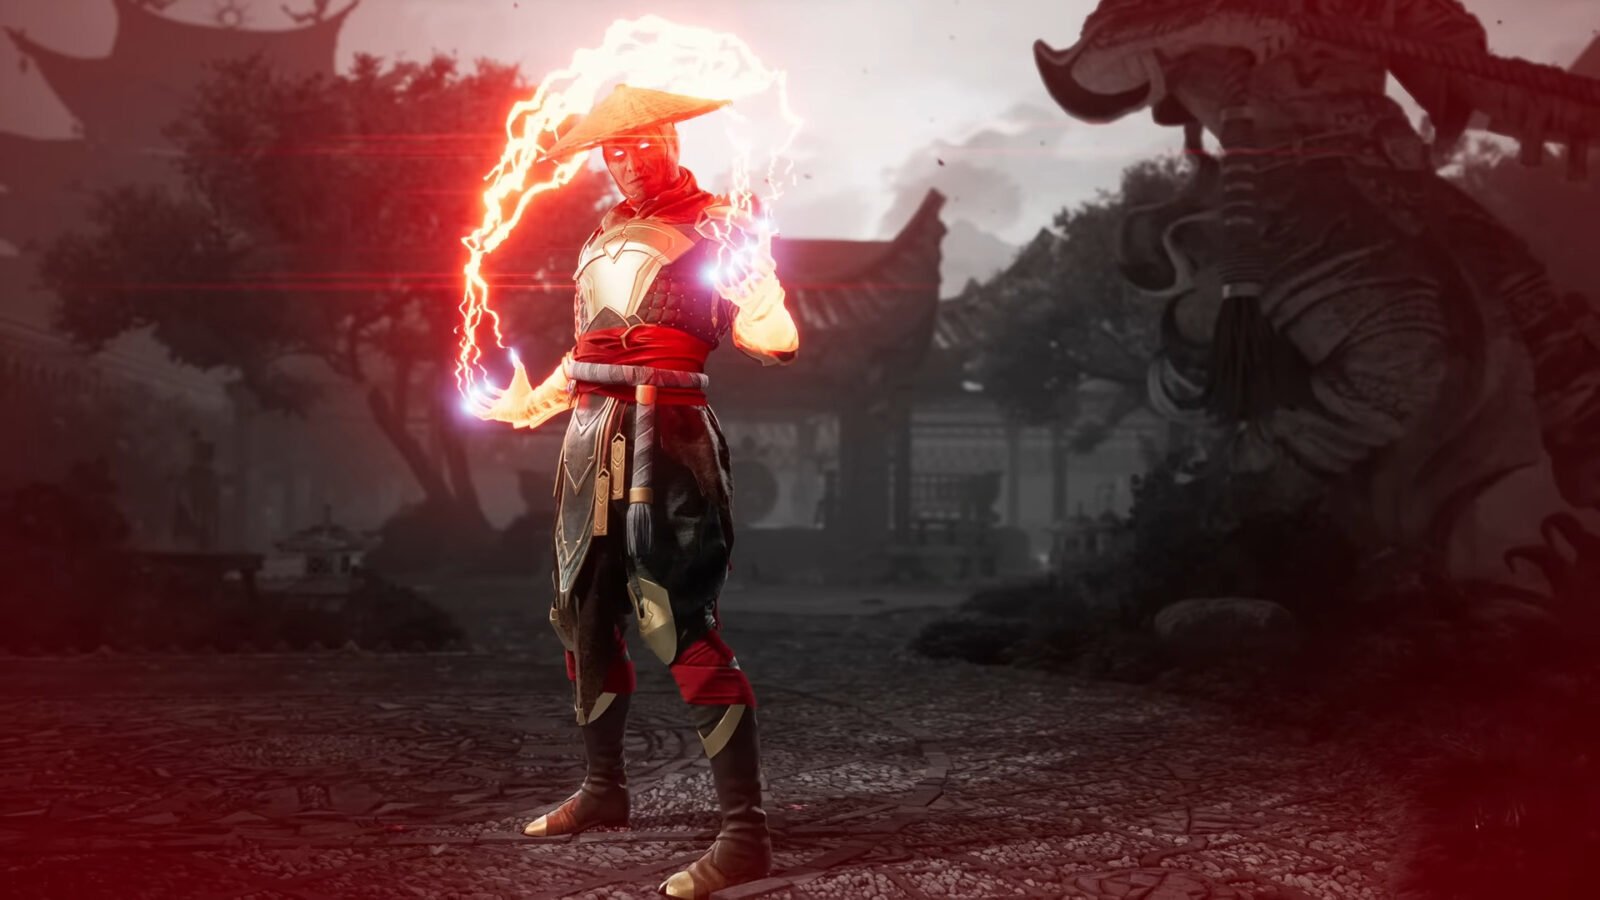 Mortal Kombat 1 Stagione 5: Tempeste è disponibile, dettagli e trailer di lancio